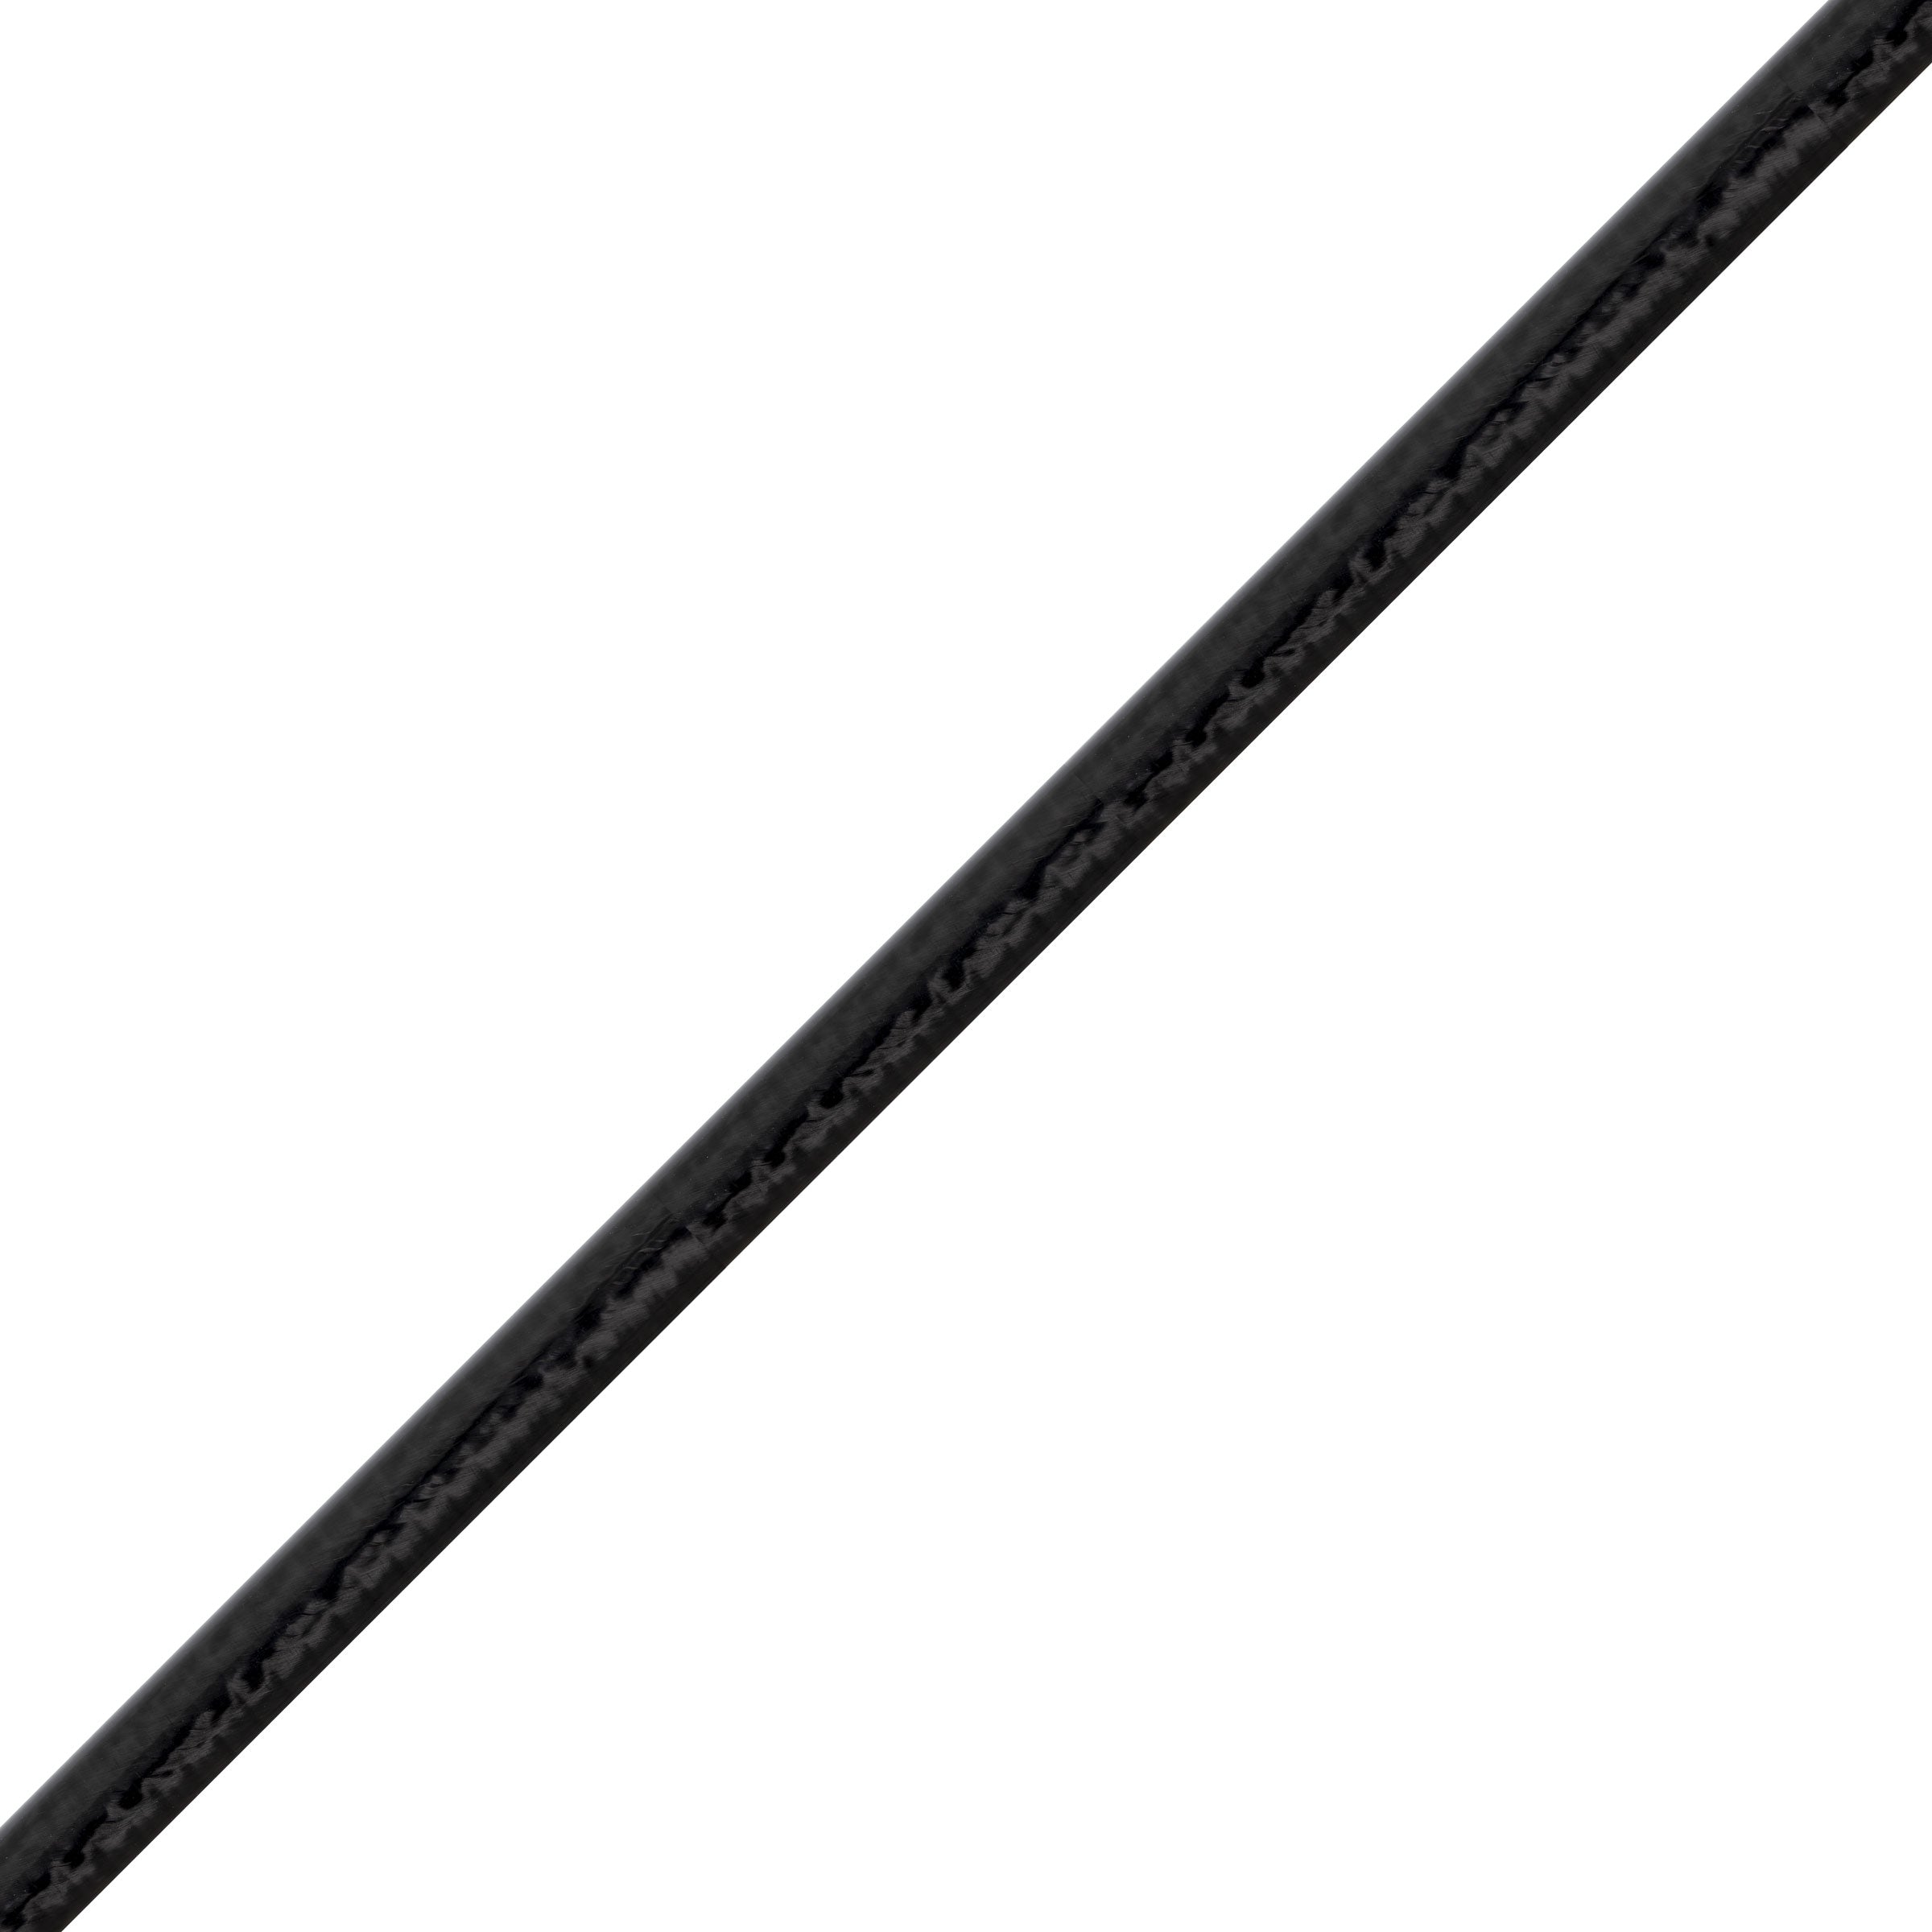 Titan Long Fall / Stick Bait Rod Blank 7'10" Heavy - TJX-L710H-B